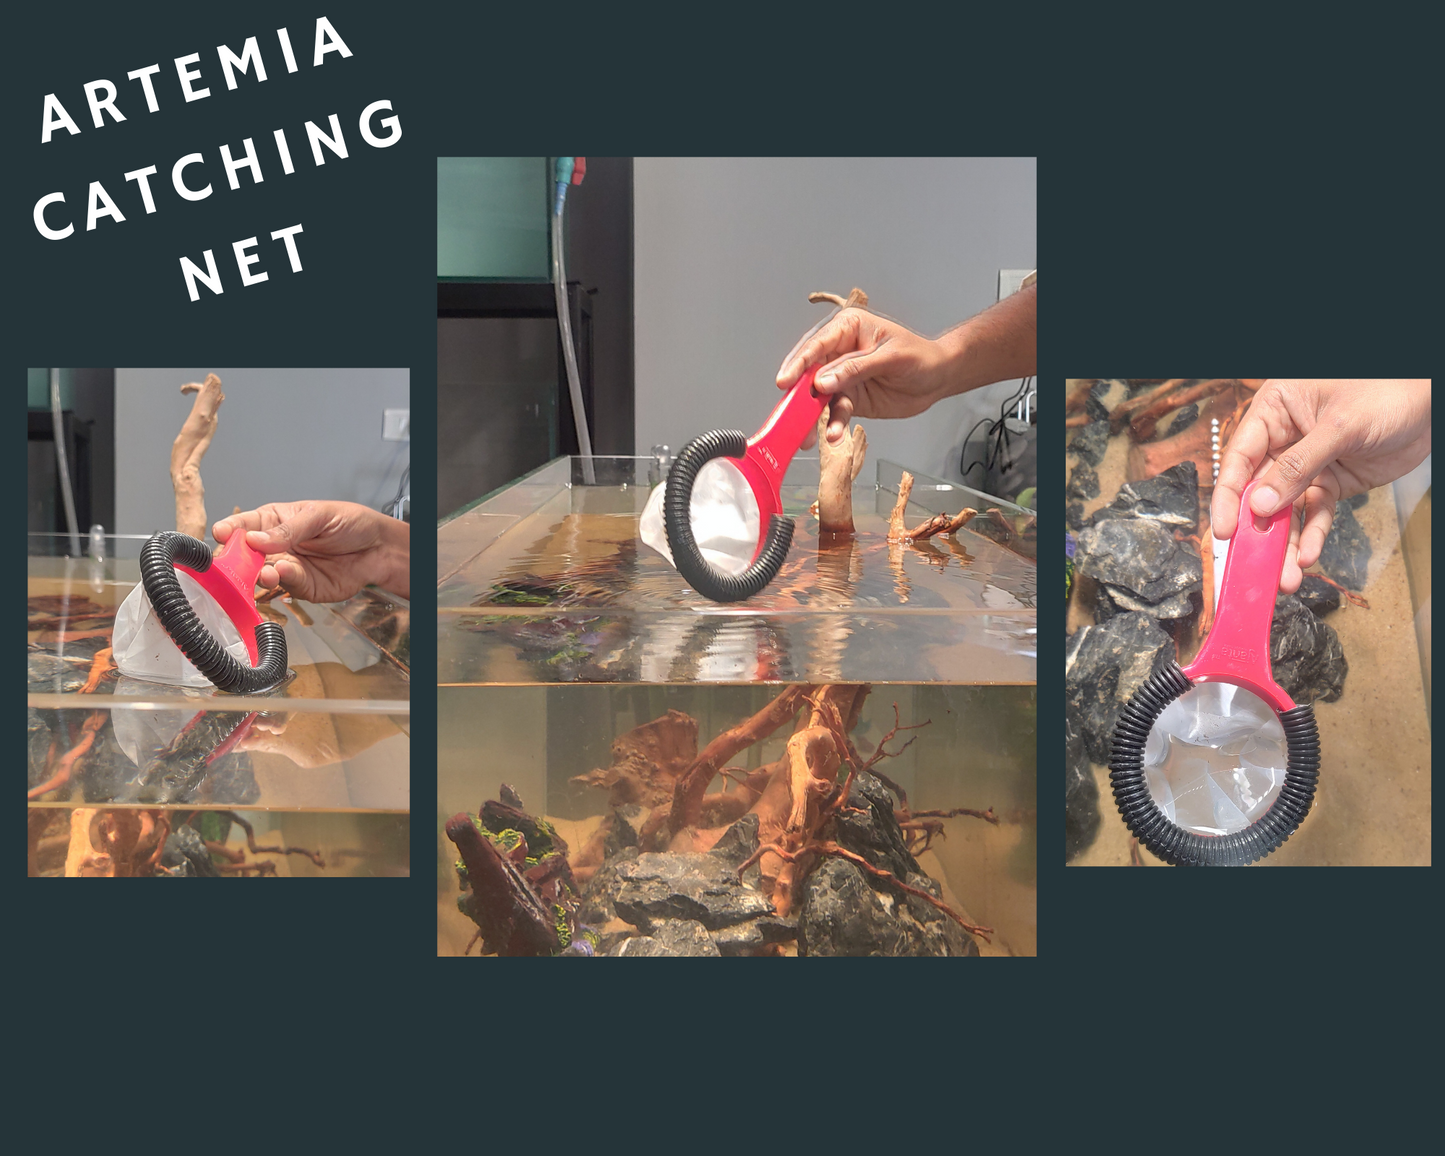 Aquarium Artemia Catching Fish Net